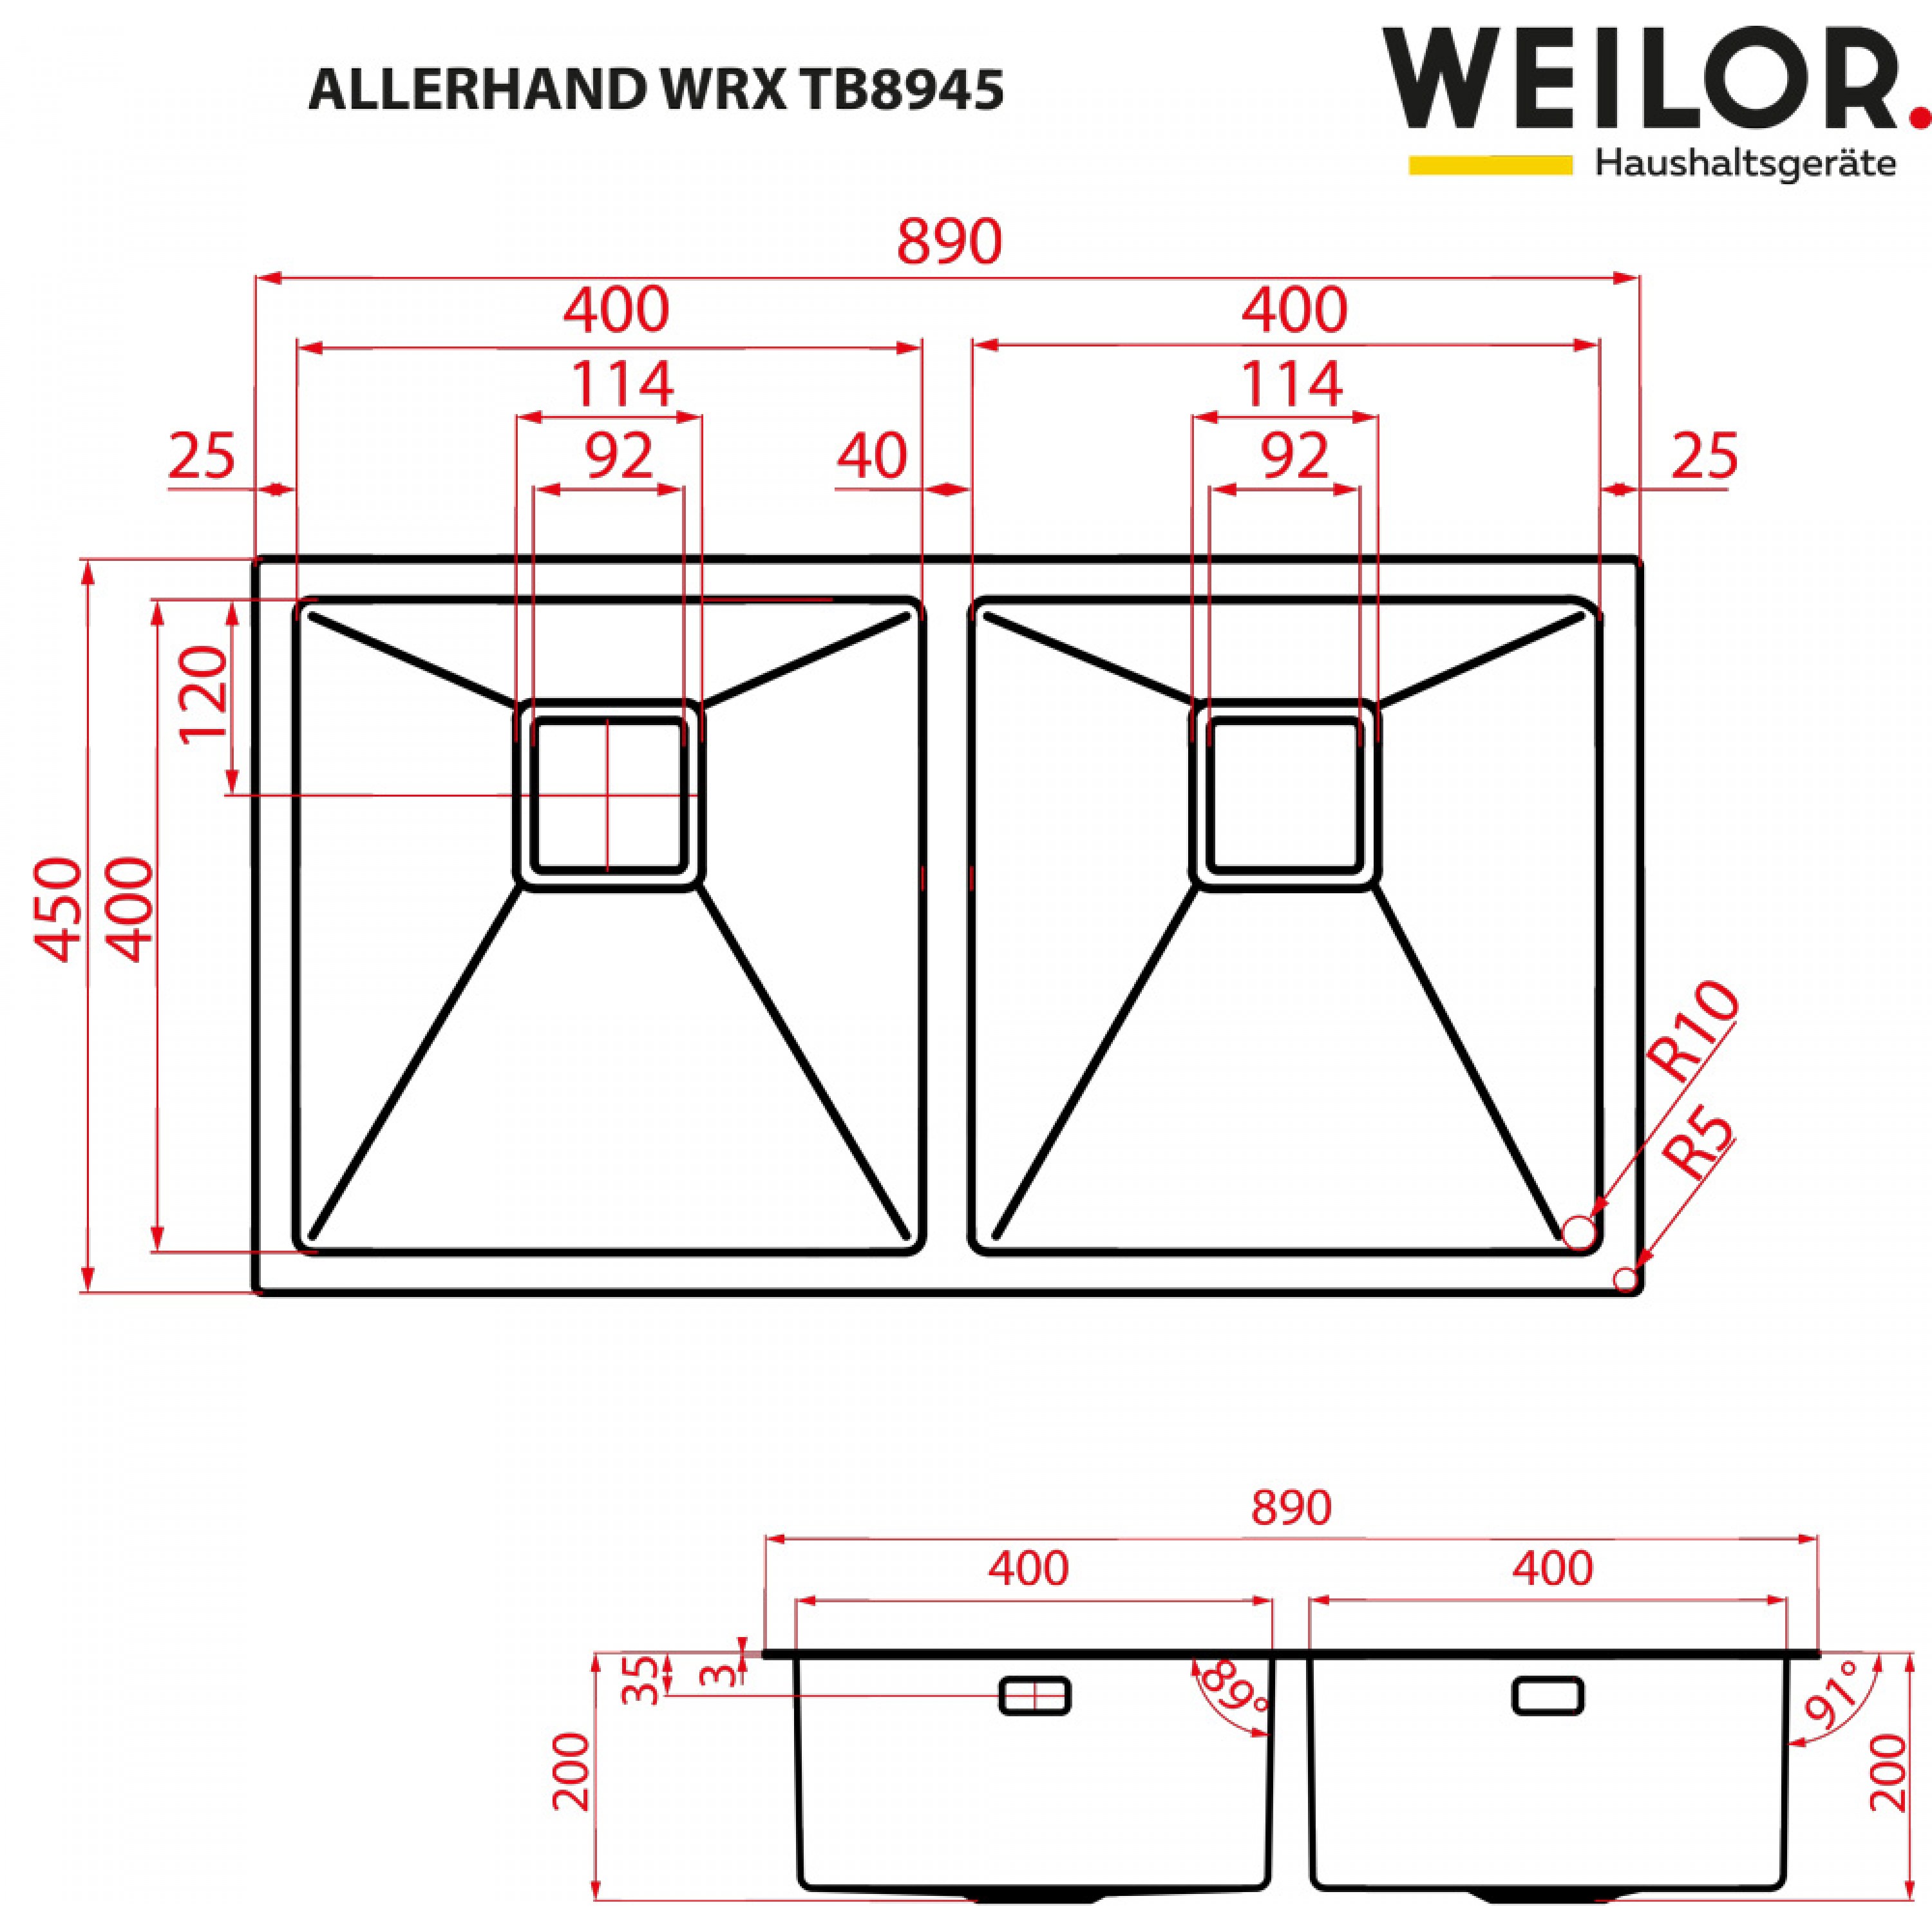 Weilor ALLERHAND WRX TB8945 Габаритные размеры